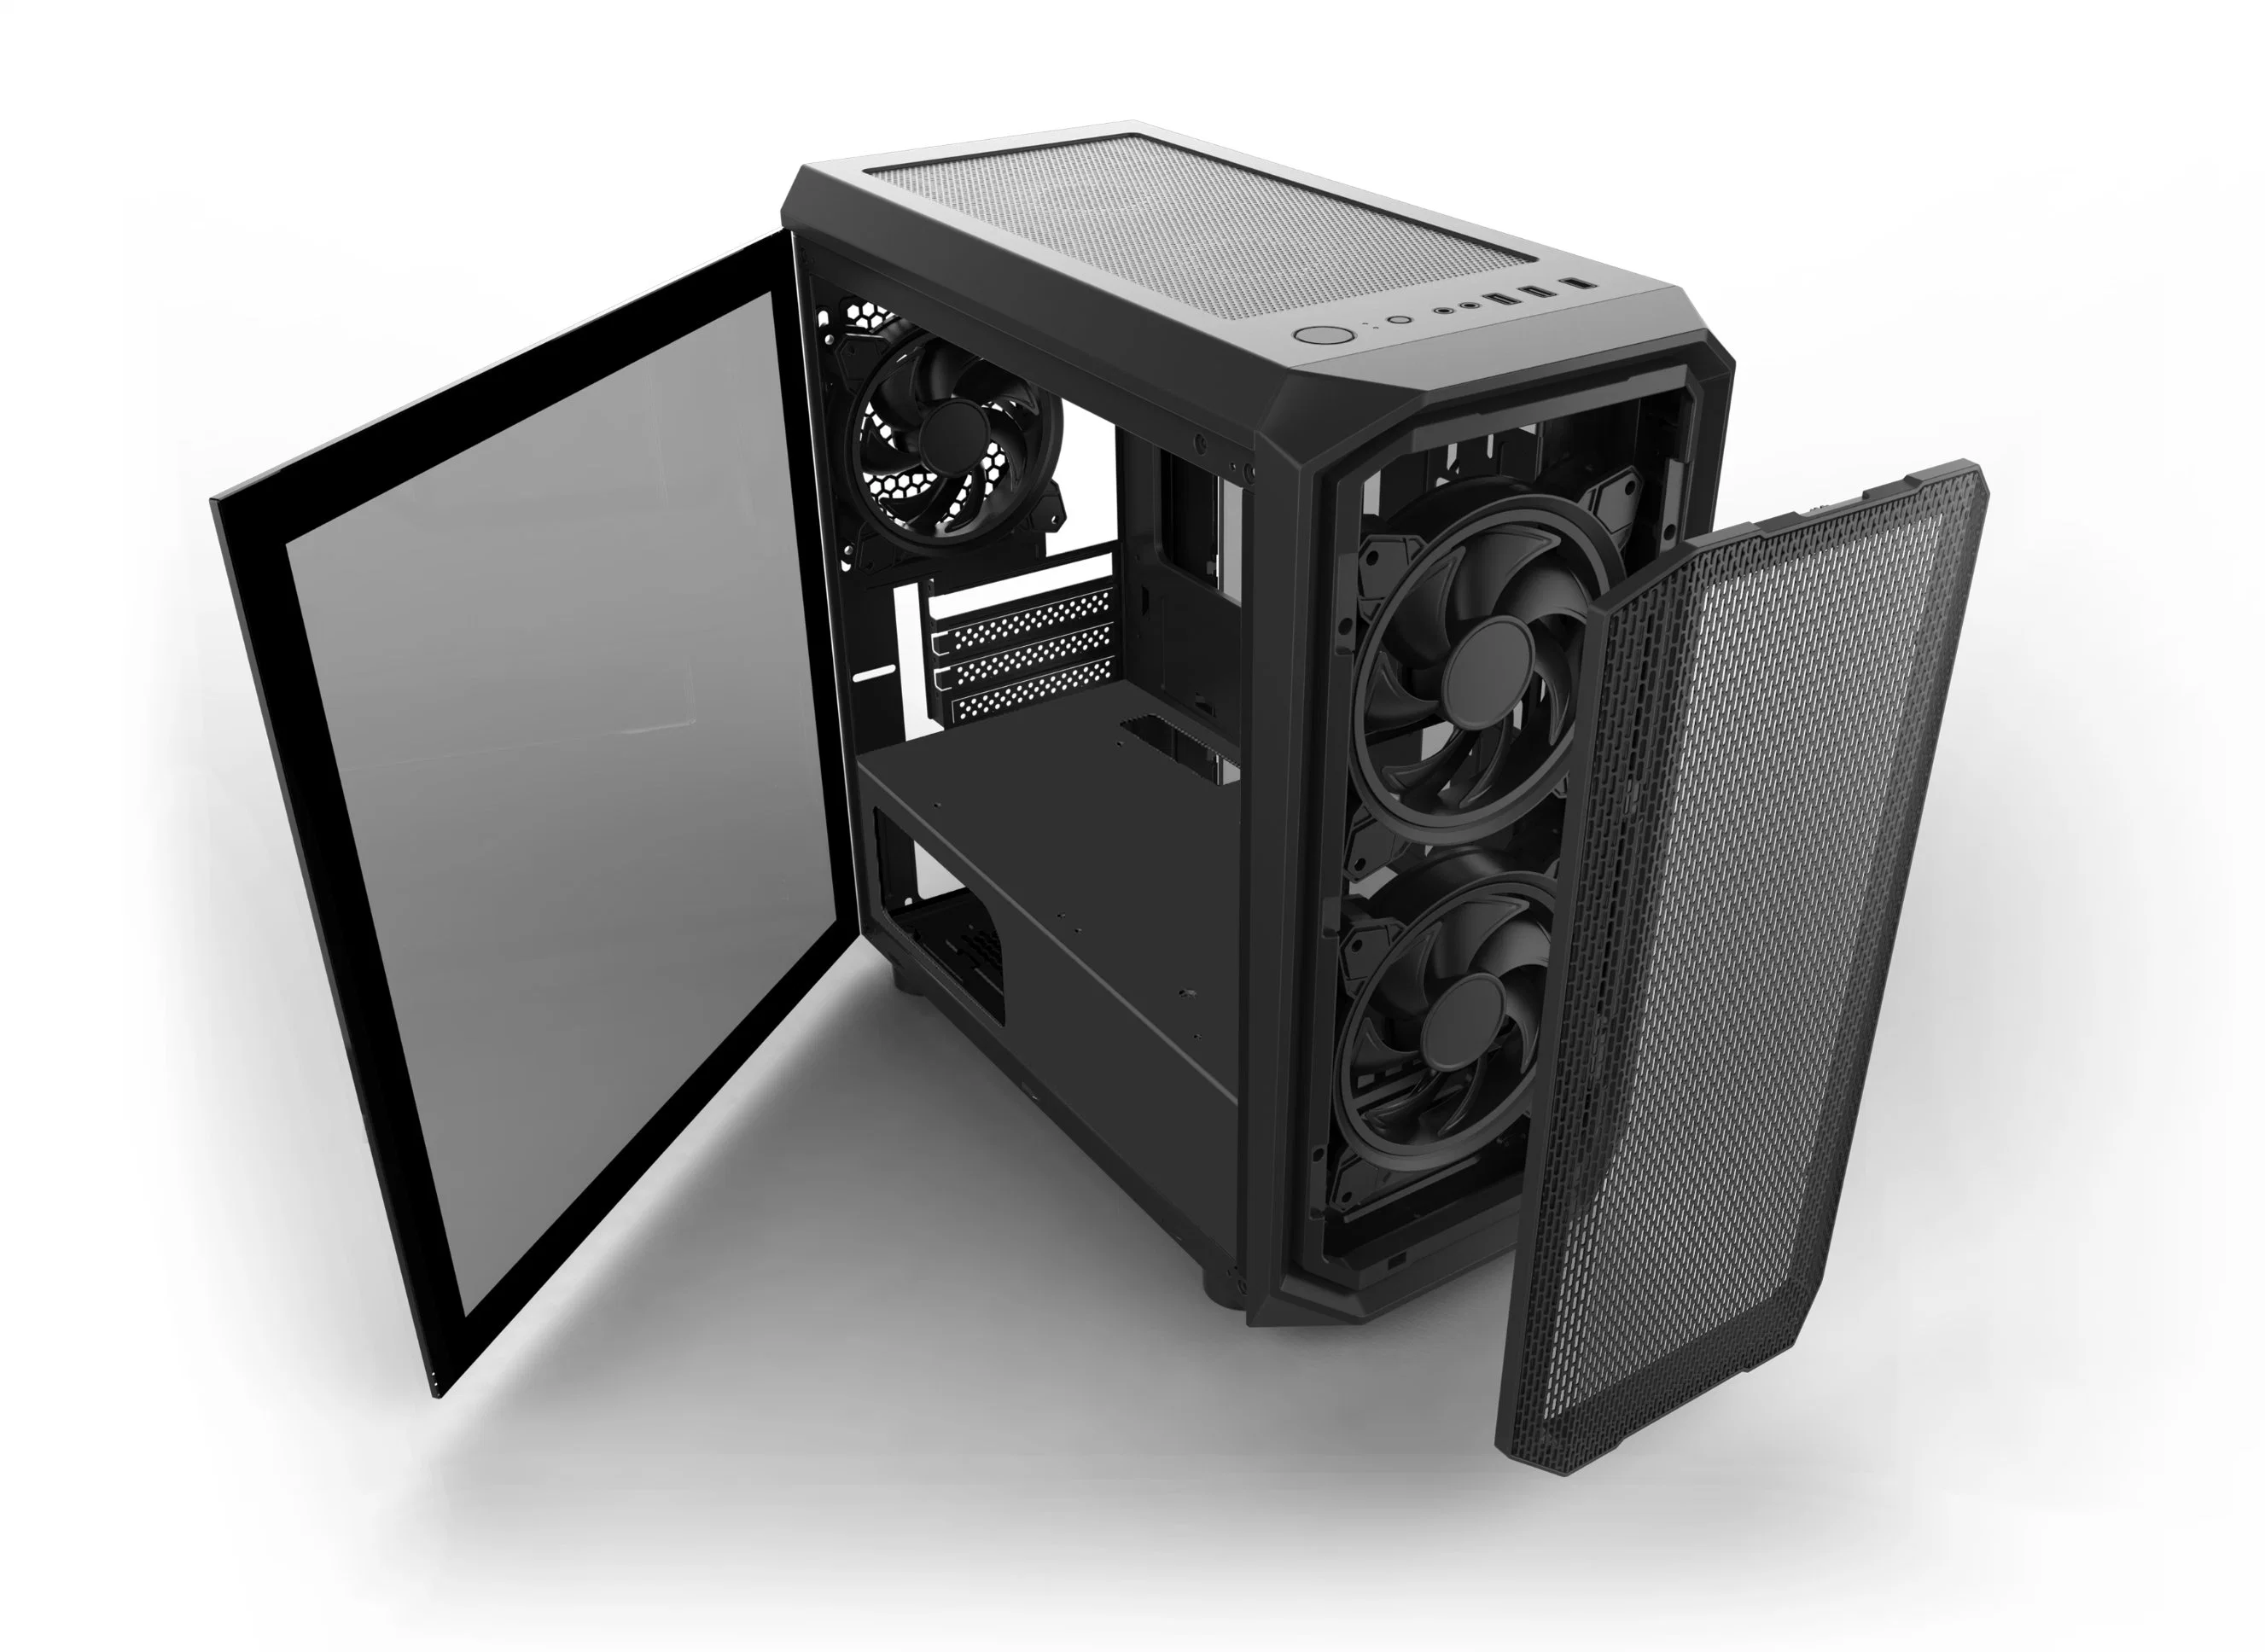 Panel de malla metálica caso Dust-Proof PC para juegos ordenador